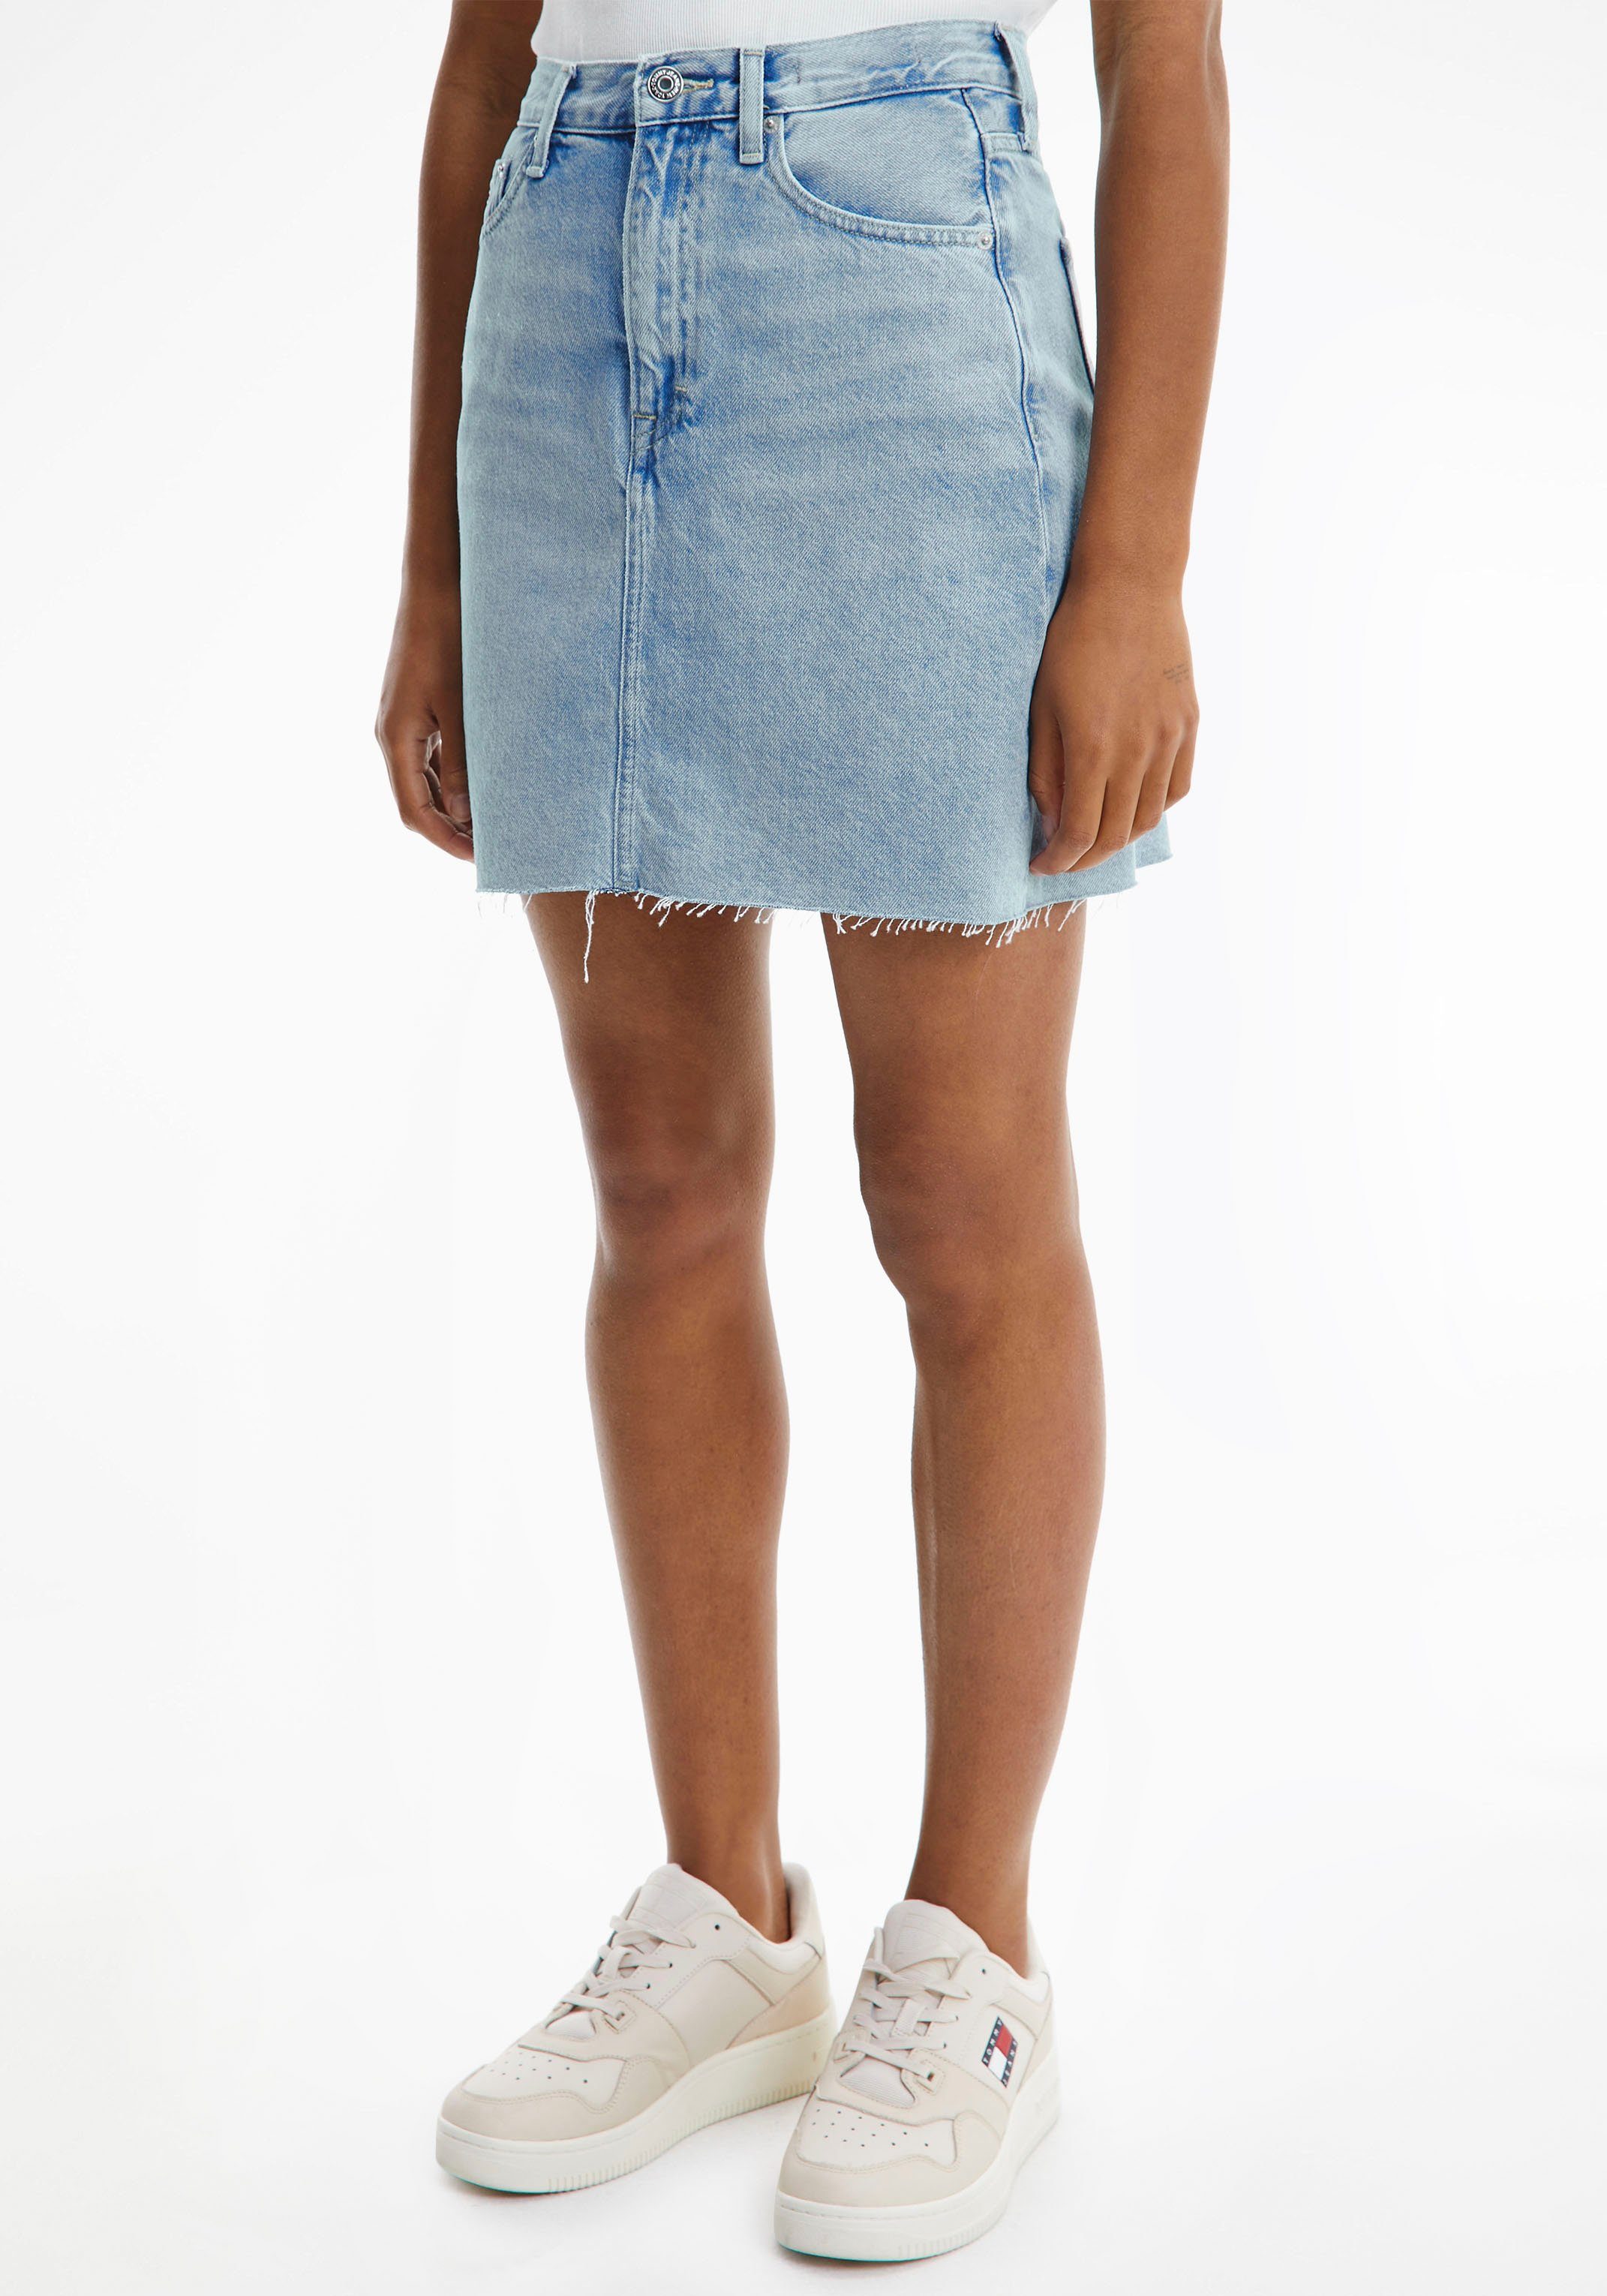 Jeansröcke für Damen » Jeansrock kaufen | OTTO